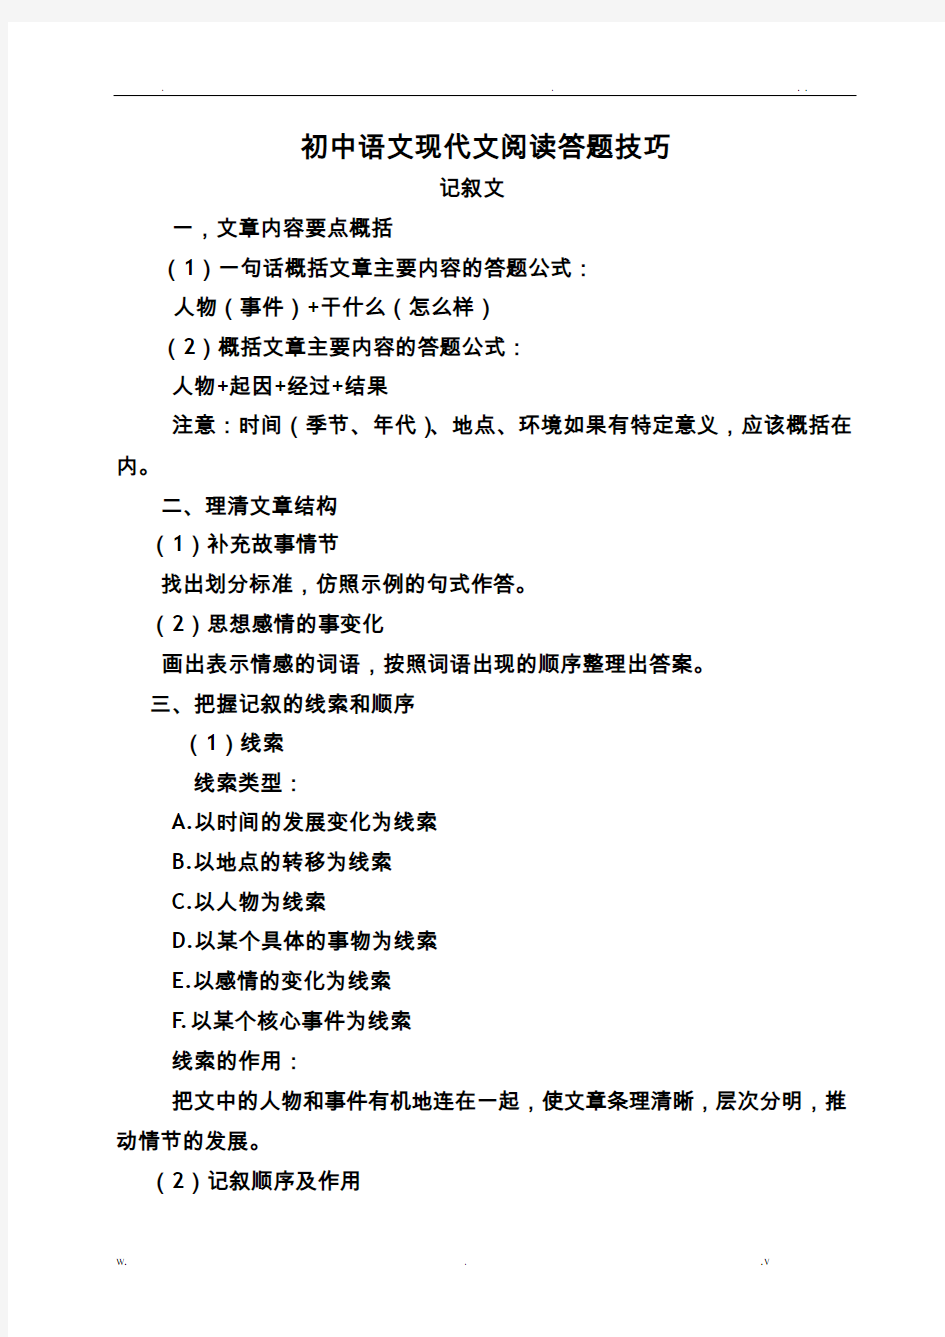 初中语文现代文阅读答题技巧